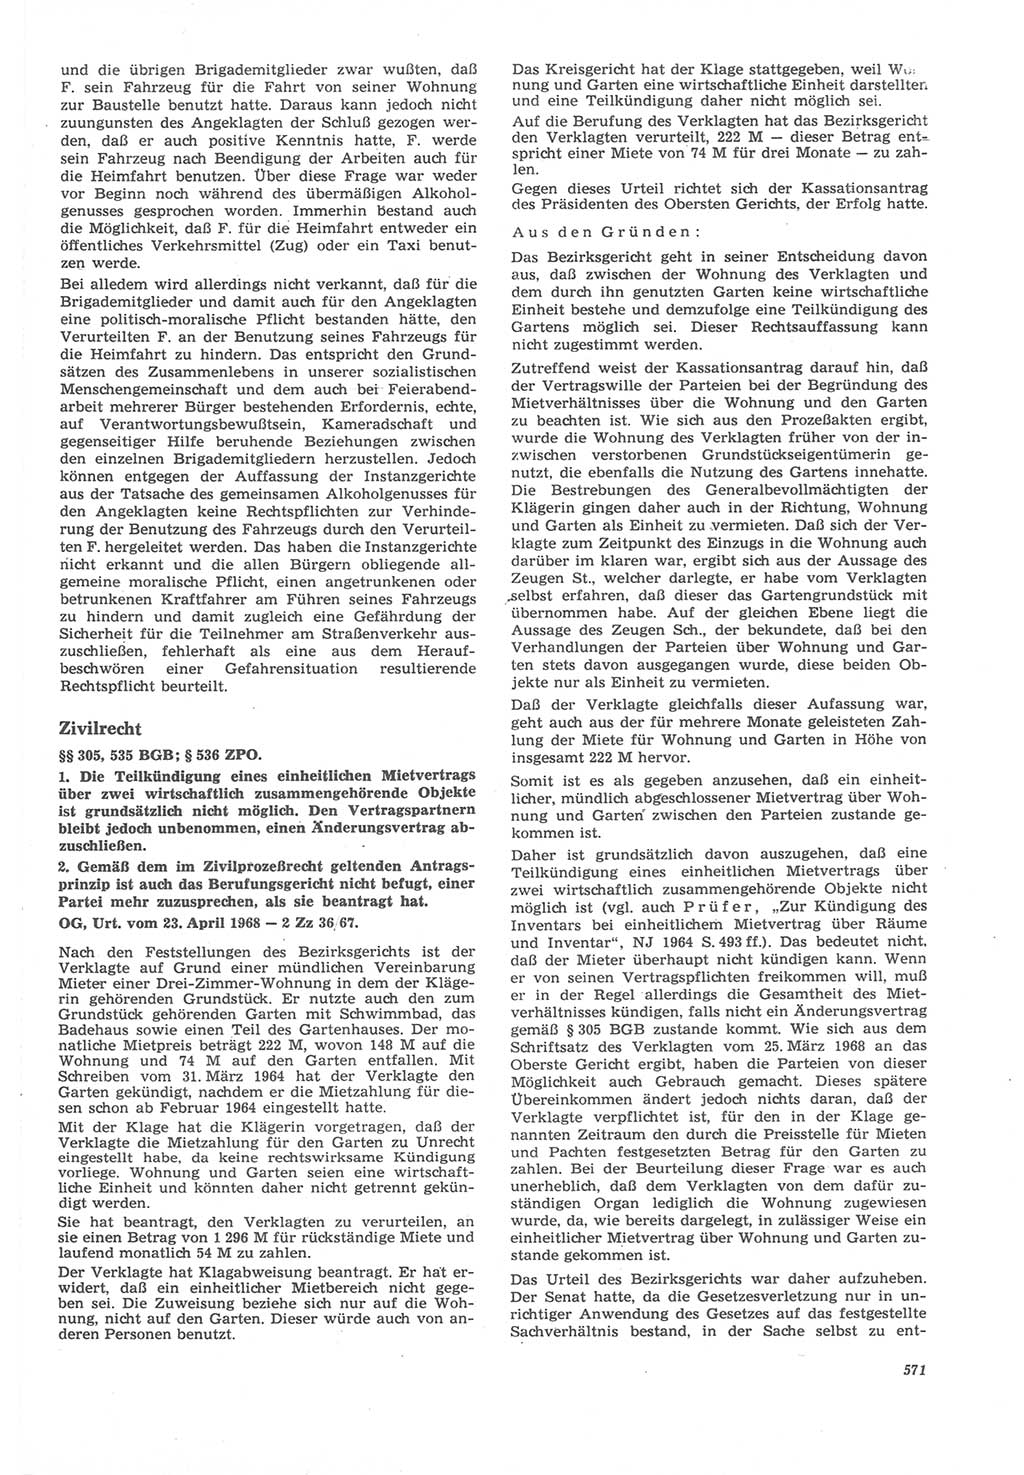 Neue Justiz (NJ), Zeitschrift für Recht und Rechtswissenschaft [Deutsche Demokratische Republik (DDR)], 22. Jahrgang 1968, Seite 571 (NJ DDR 1968, S. 571)